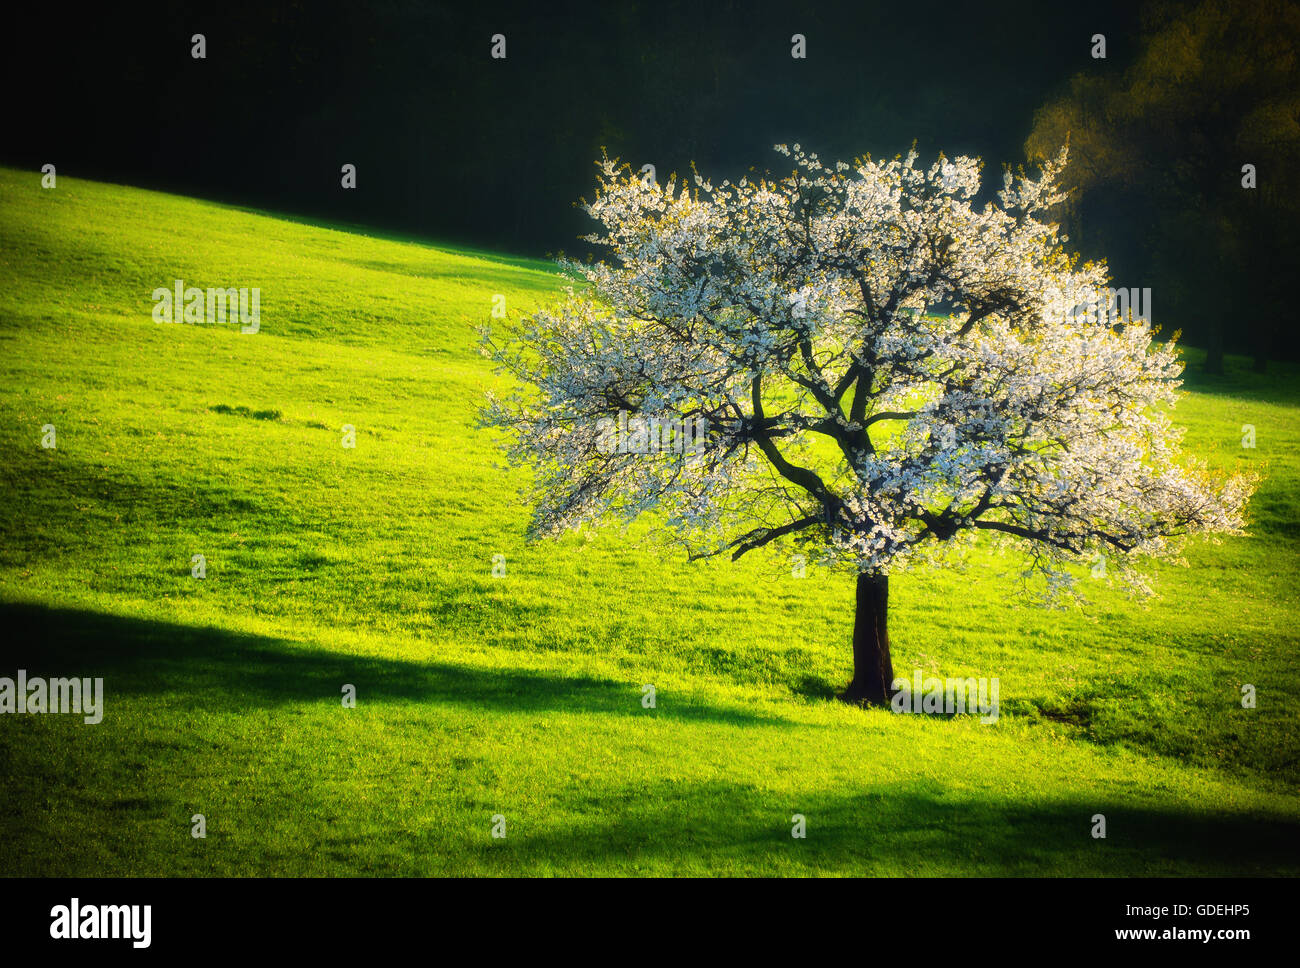 Cherry blossom tree in field, Switzerland Stock Photo